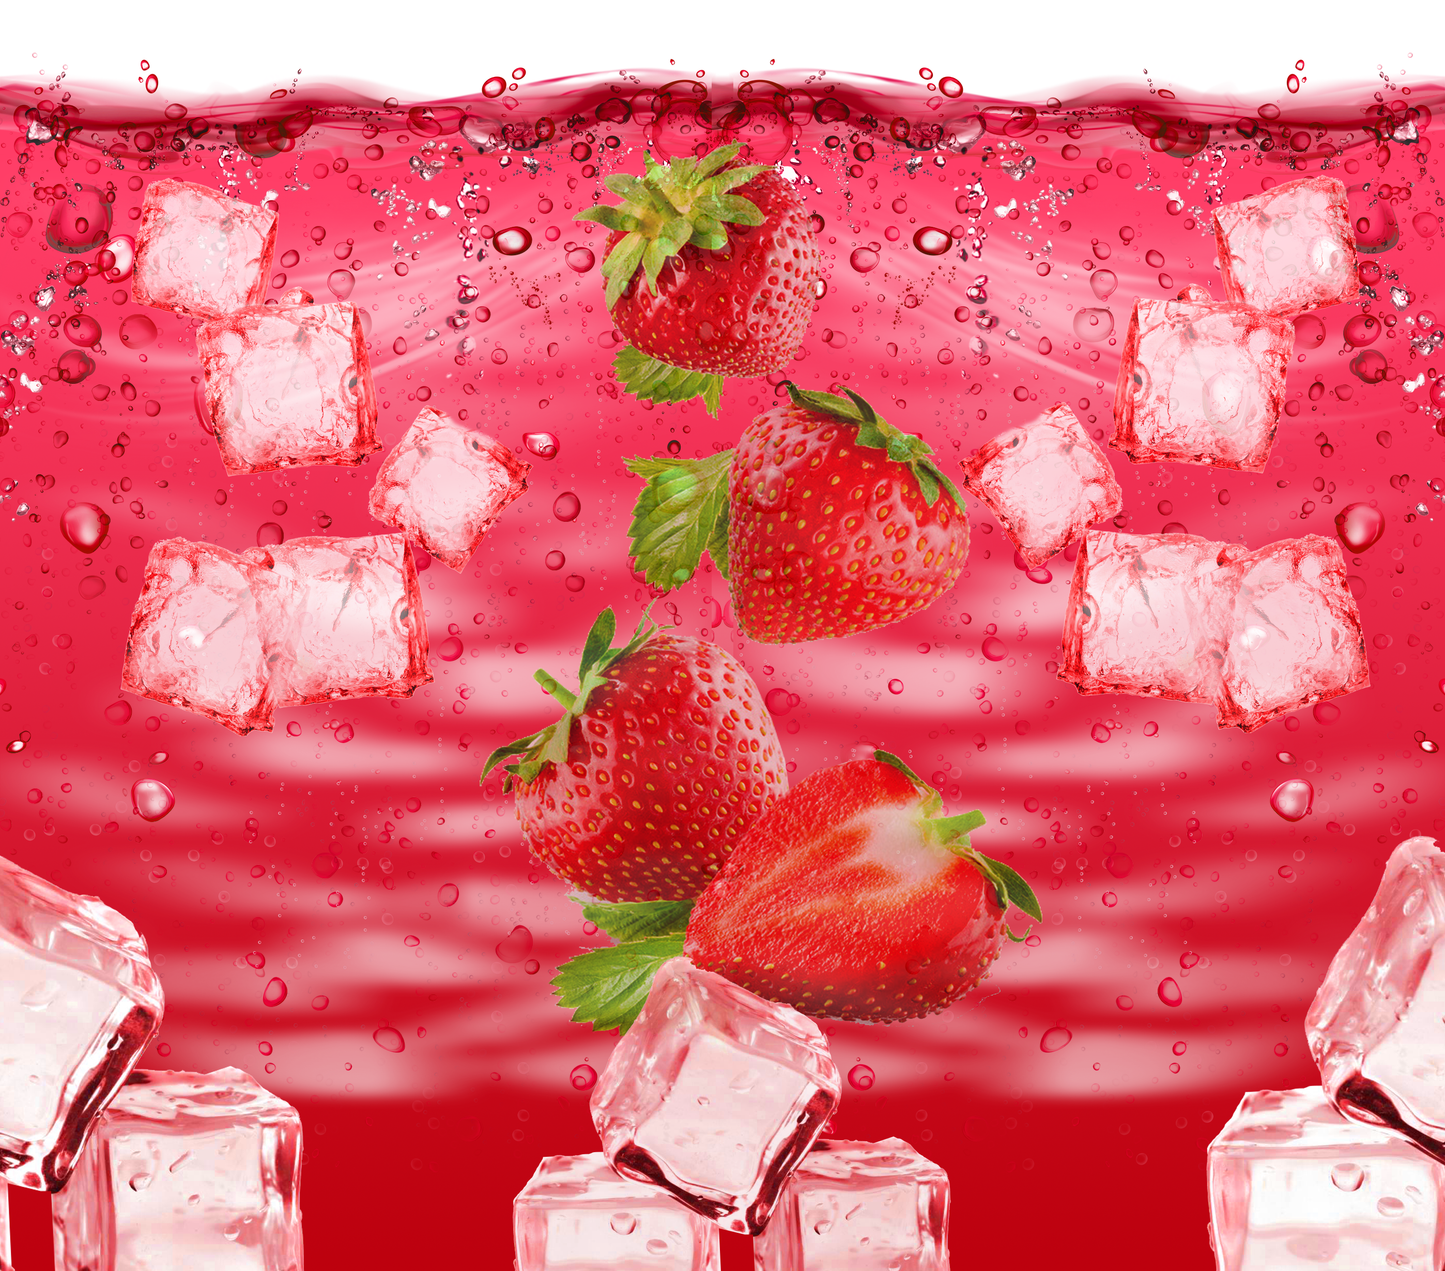 TW1557 strawberry ice